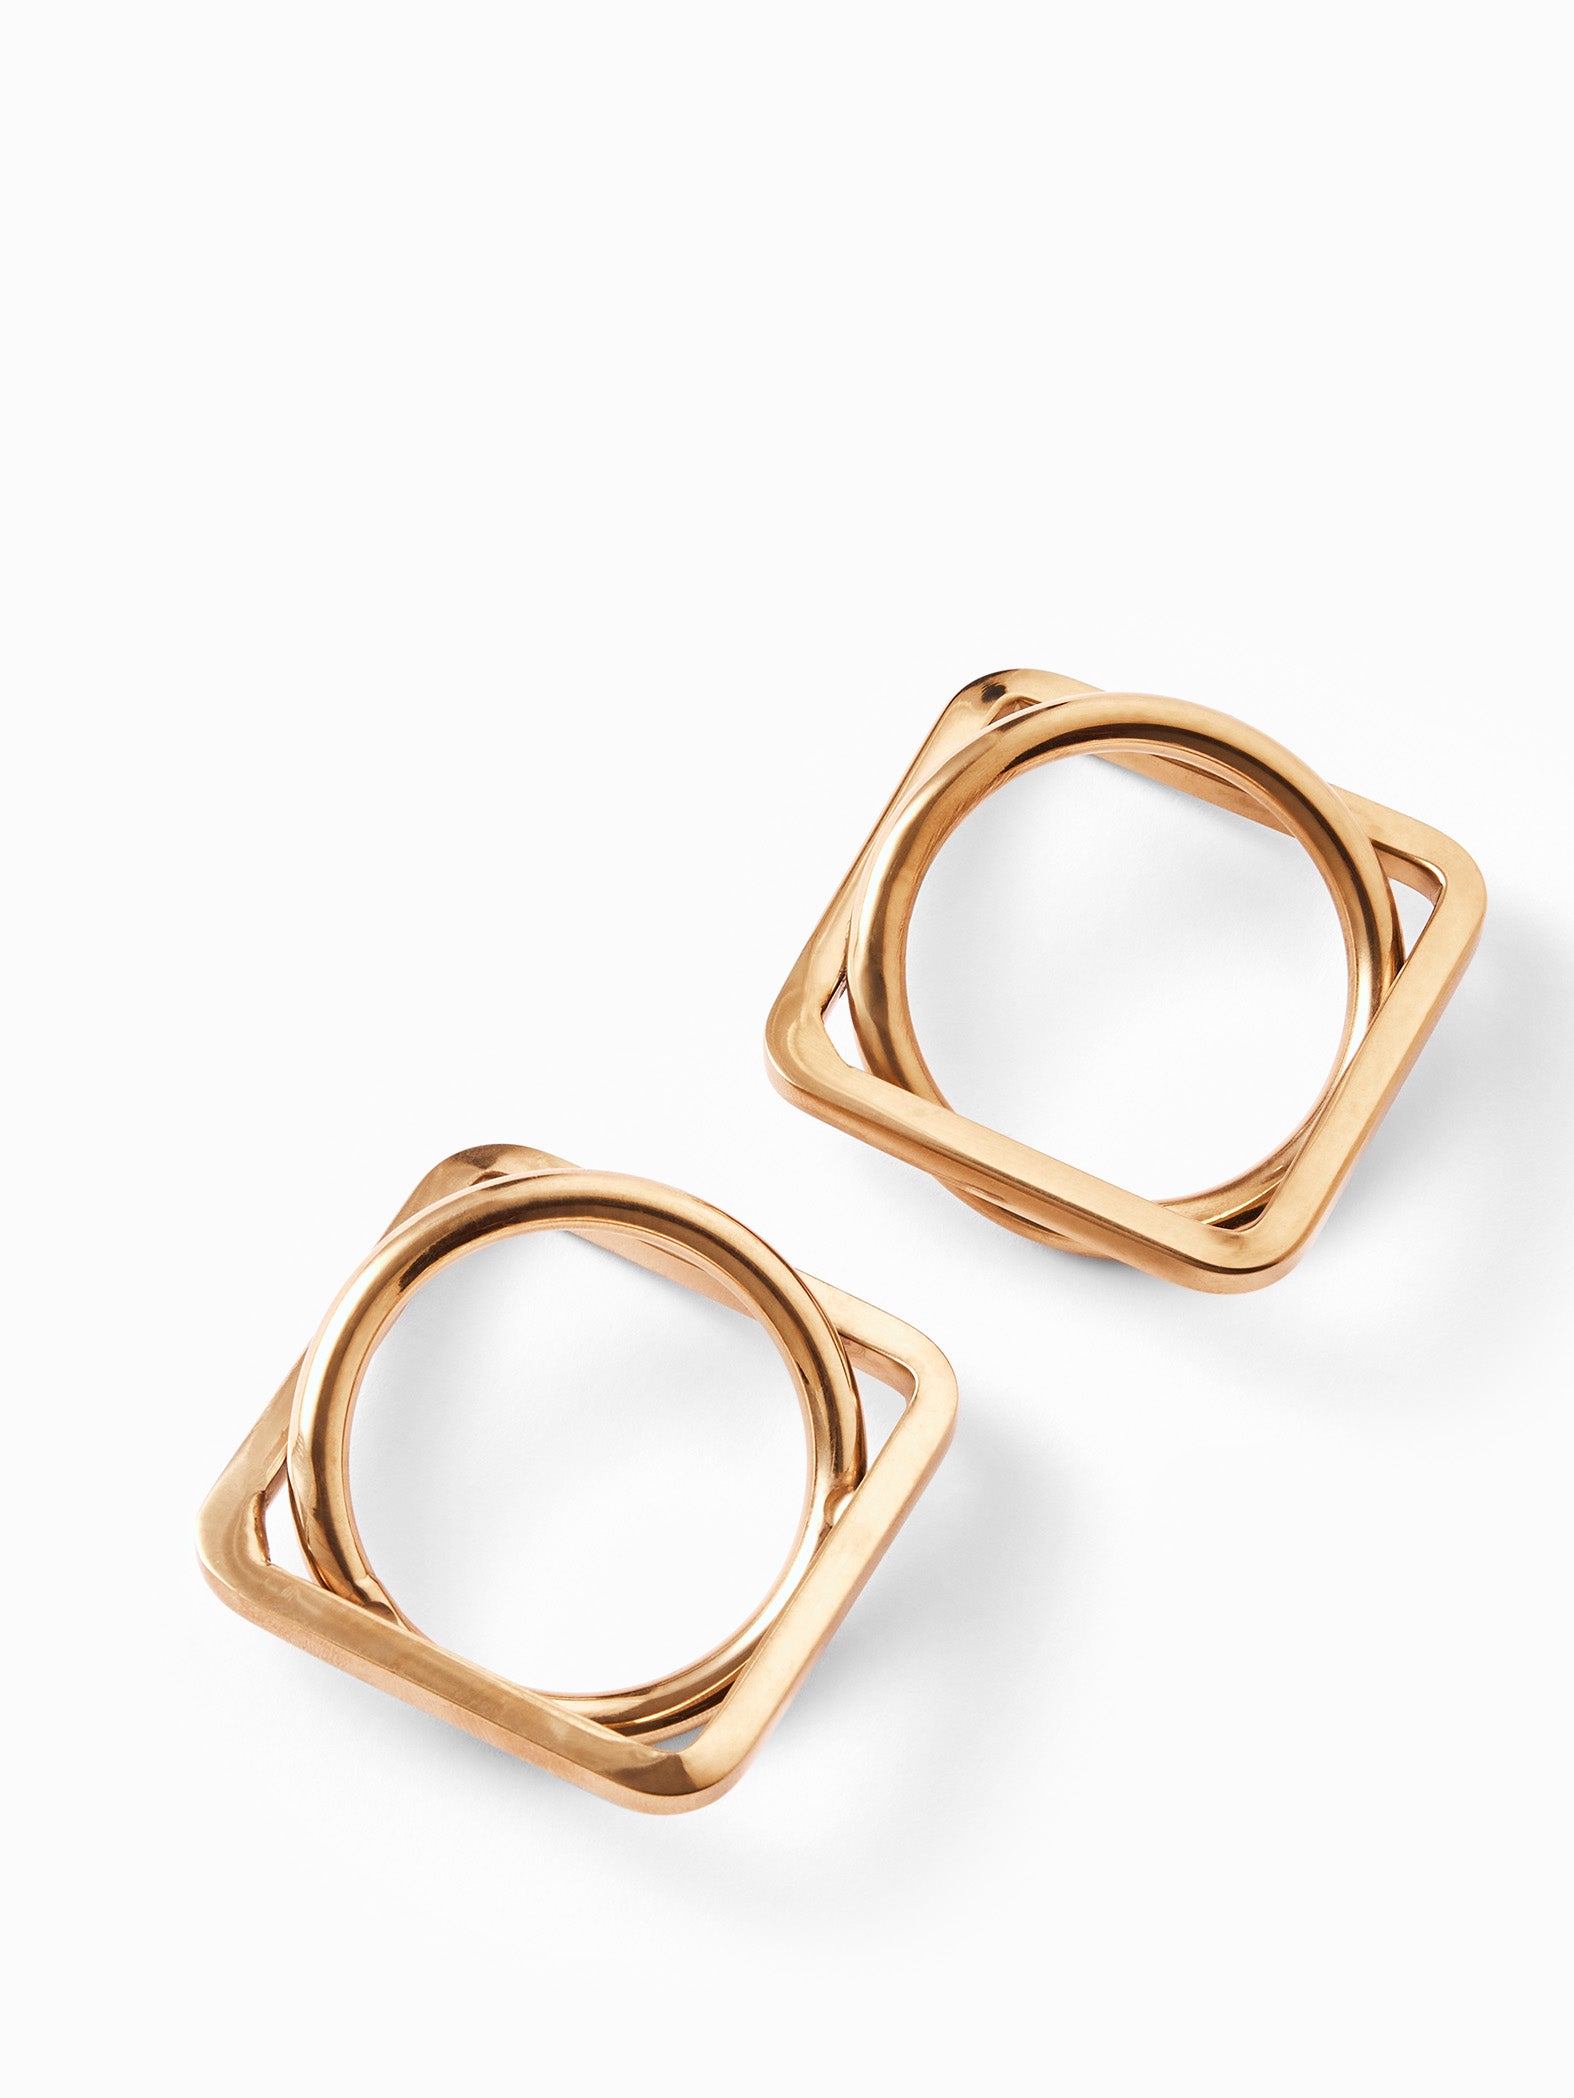 Gold Geometric Napkin Ring Set